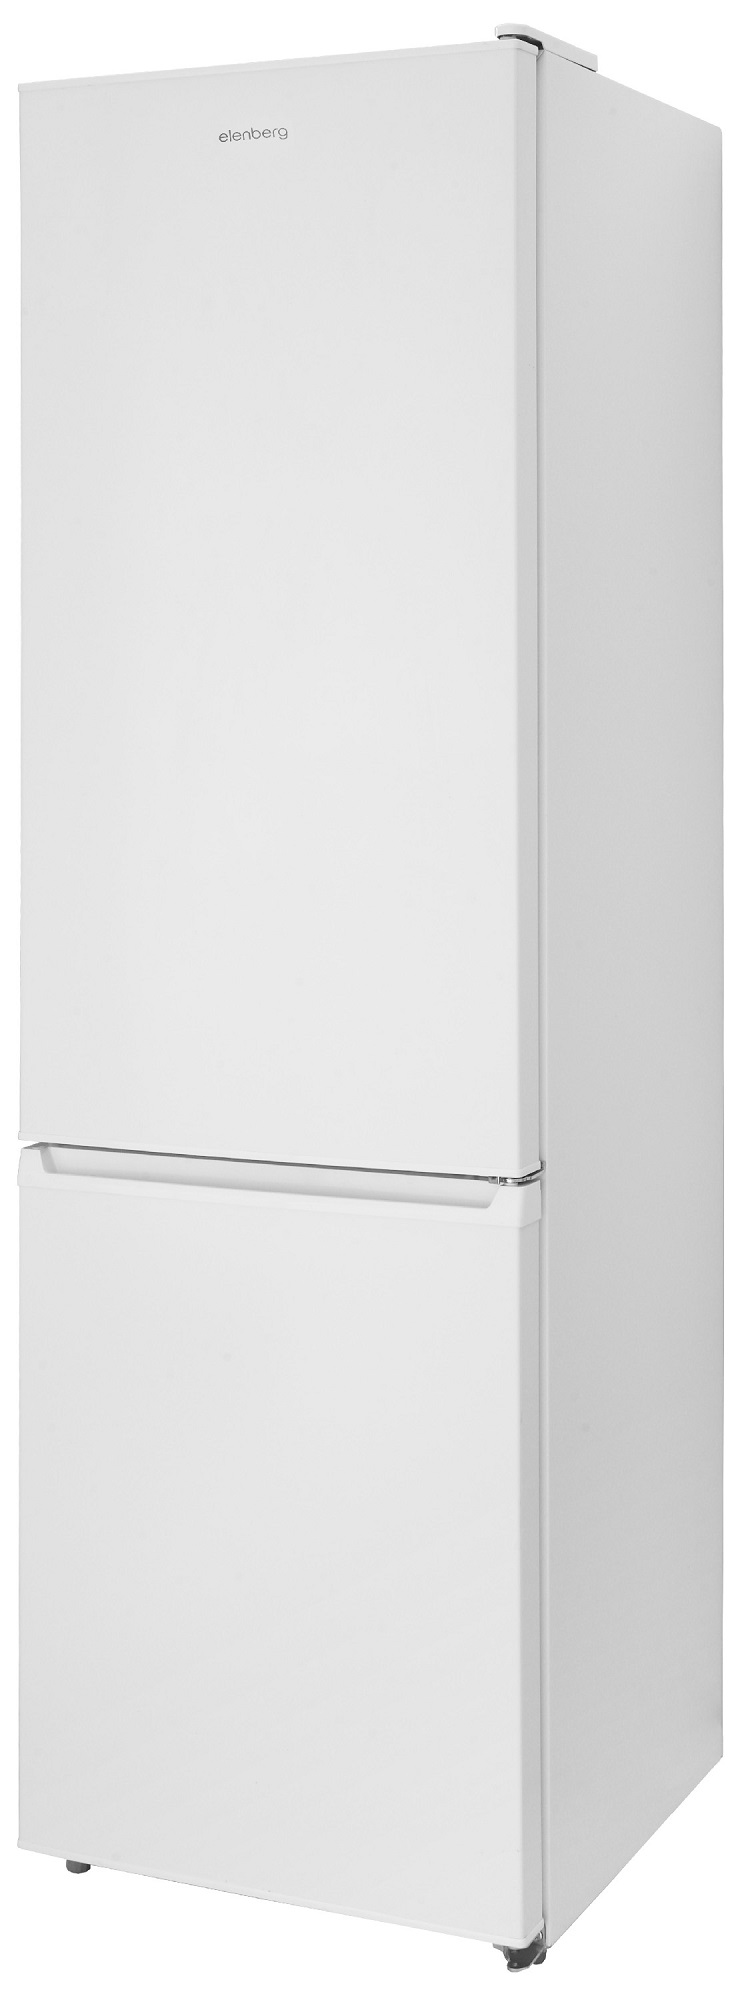 Холодильник Elenberg BMFN-189 внешний вид - фото 9